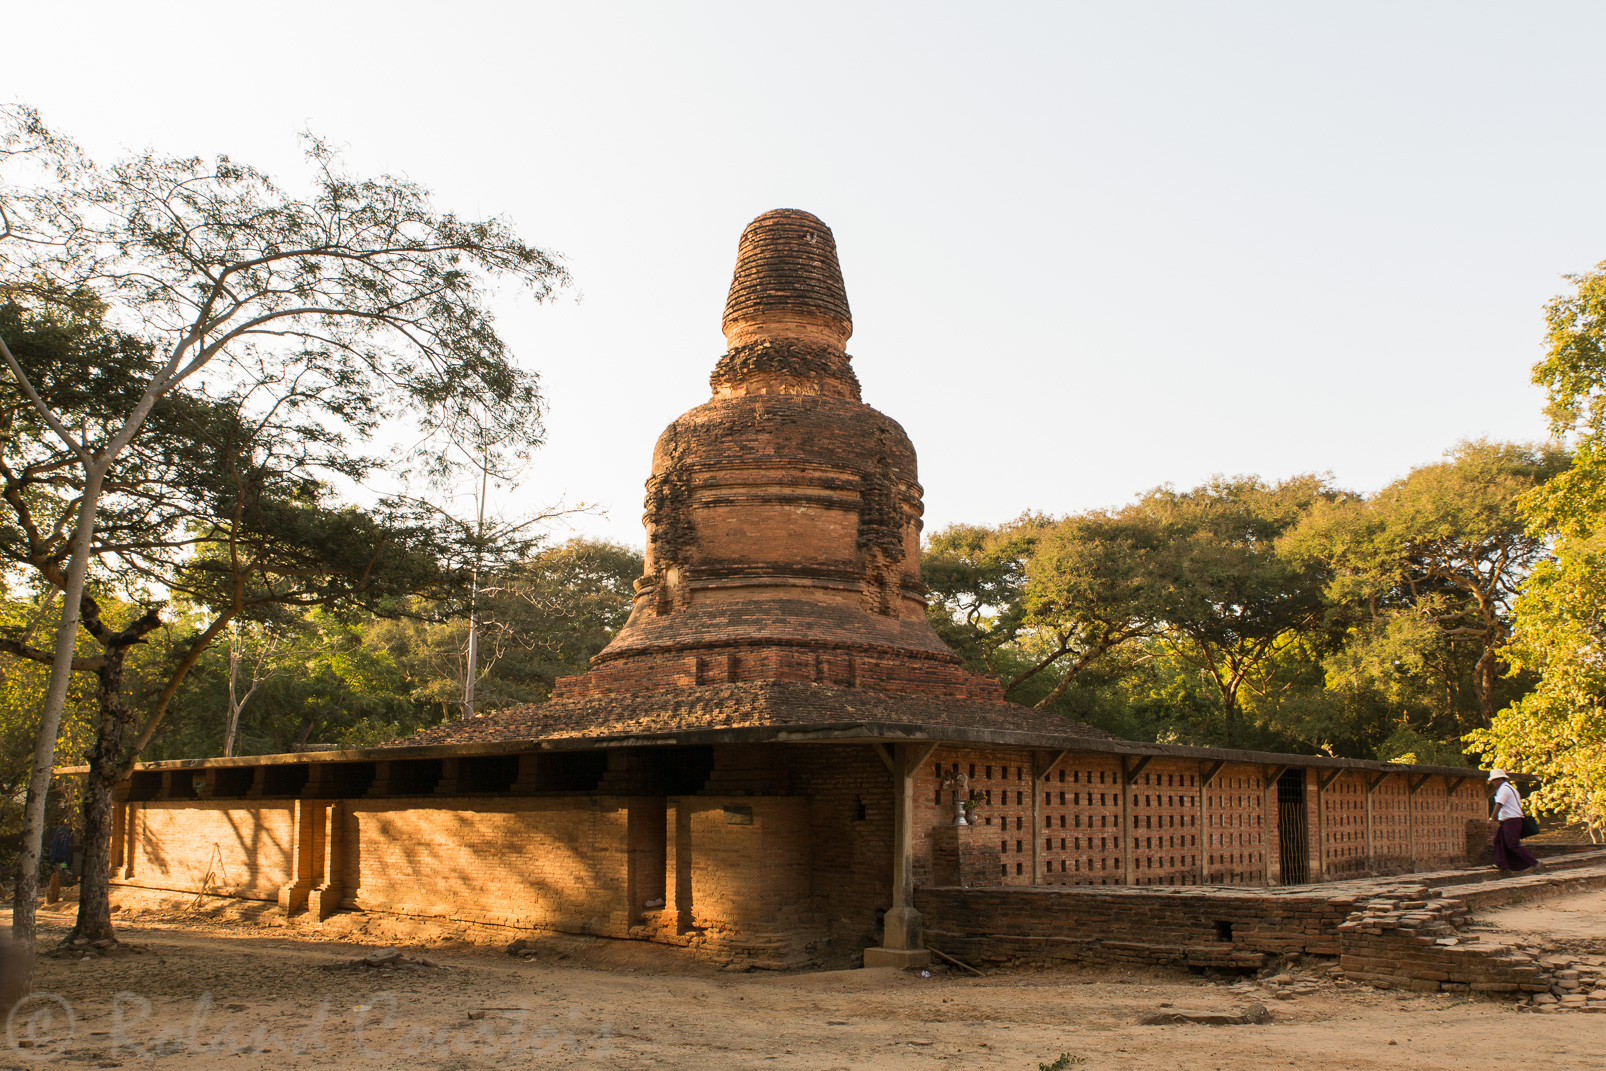 Les pagodes Hpetleik (est et ouest) datent du XIème siècle. Tout le pourtour de la base est orné de tablettes en terre cuite illustrant les 550 Jatakas.